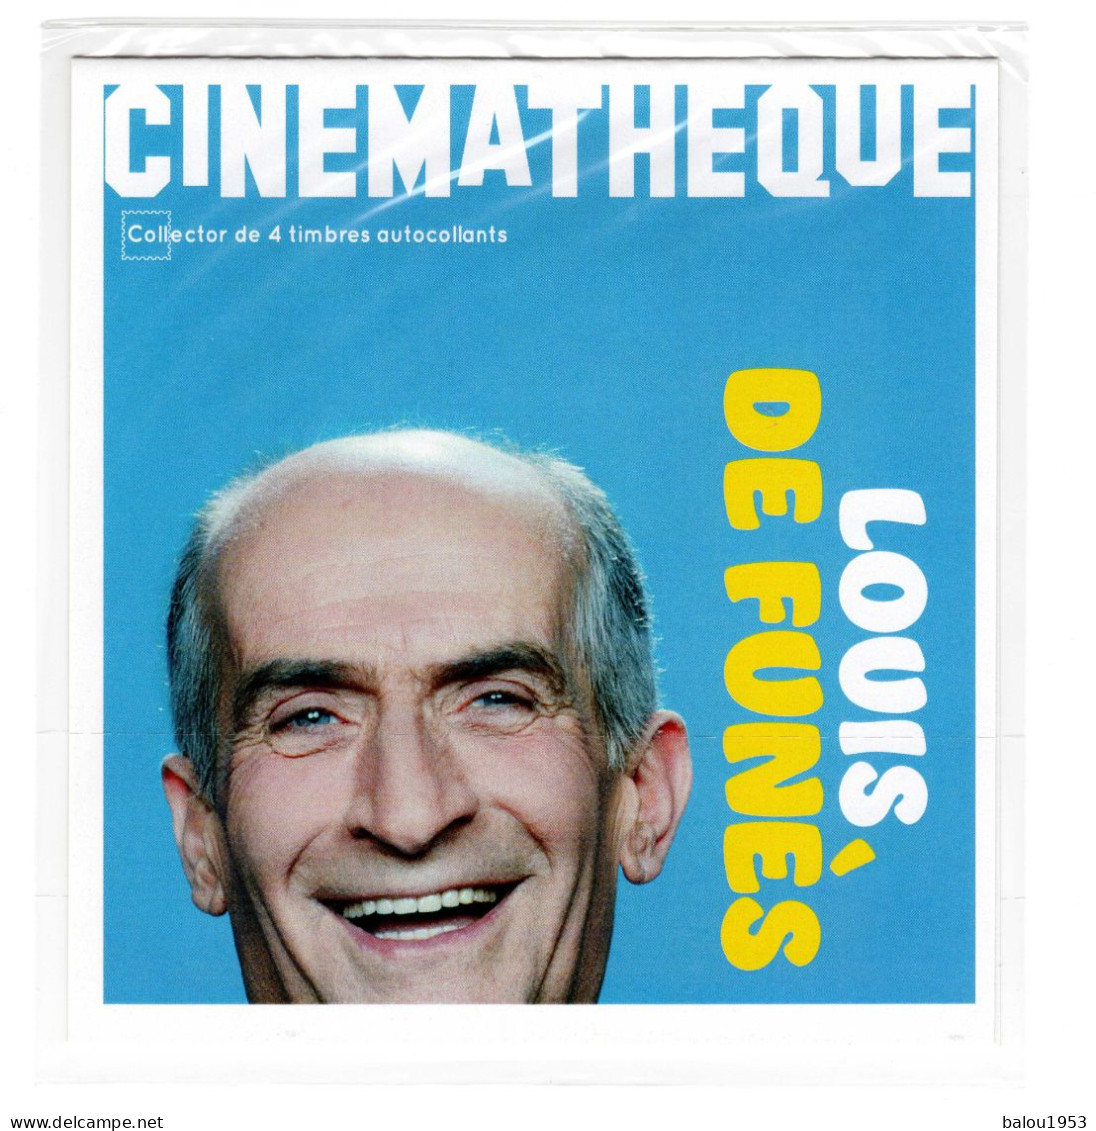 Fr. Collectors. 2021. Les Voitures Des 4 Films Emblématiques De Louis De Funés. COLL 446. - Collectors